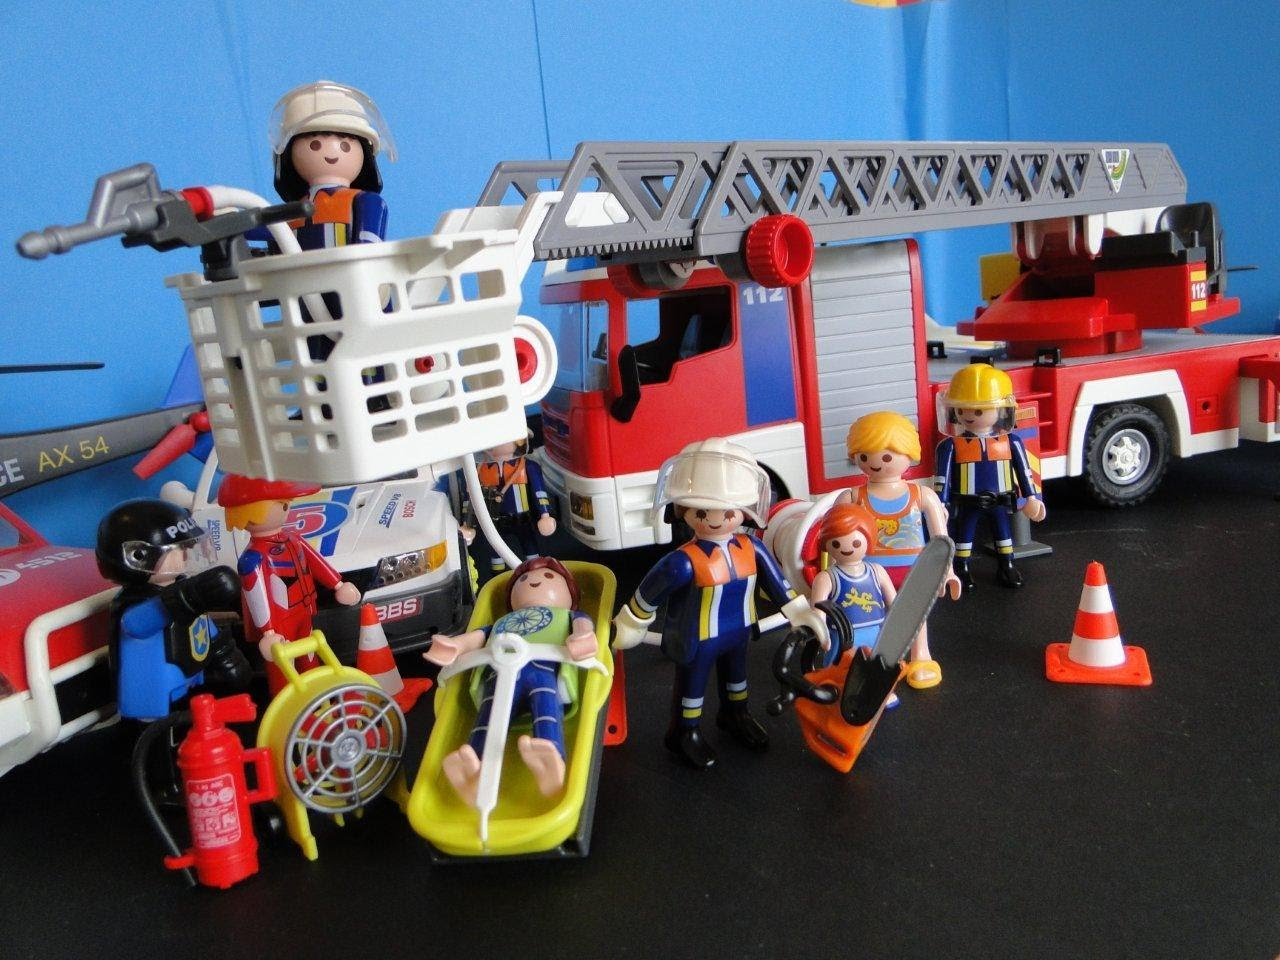 Playmobil Pompier Grande Echelle - Escapadeslegendes.fr dedans Playmobil Camion Pompier Grande Echelle 